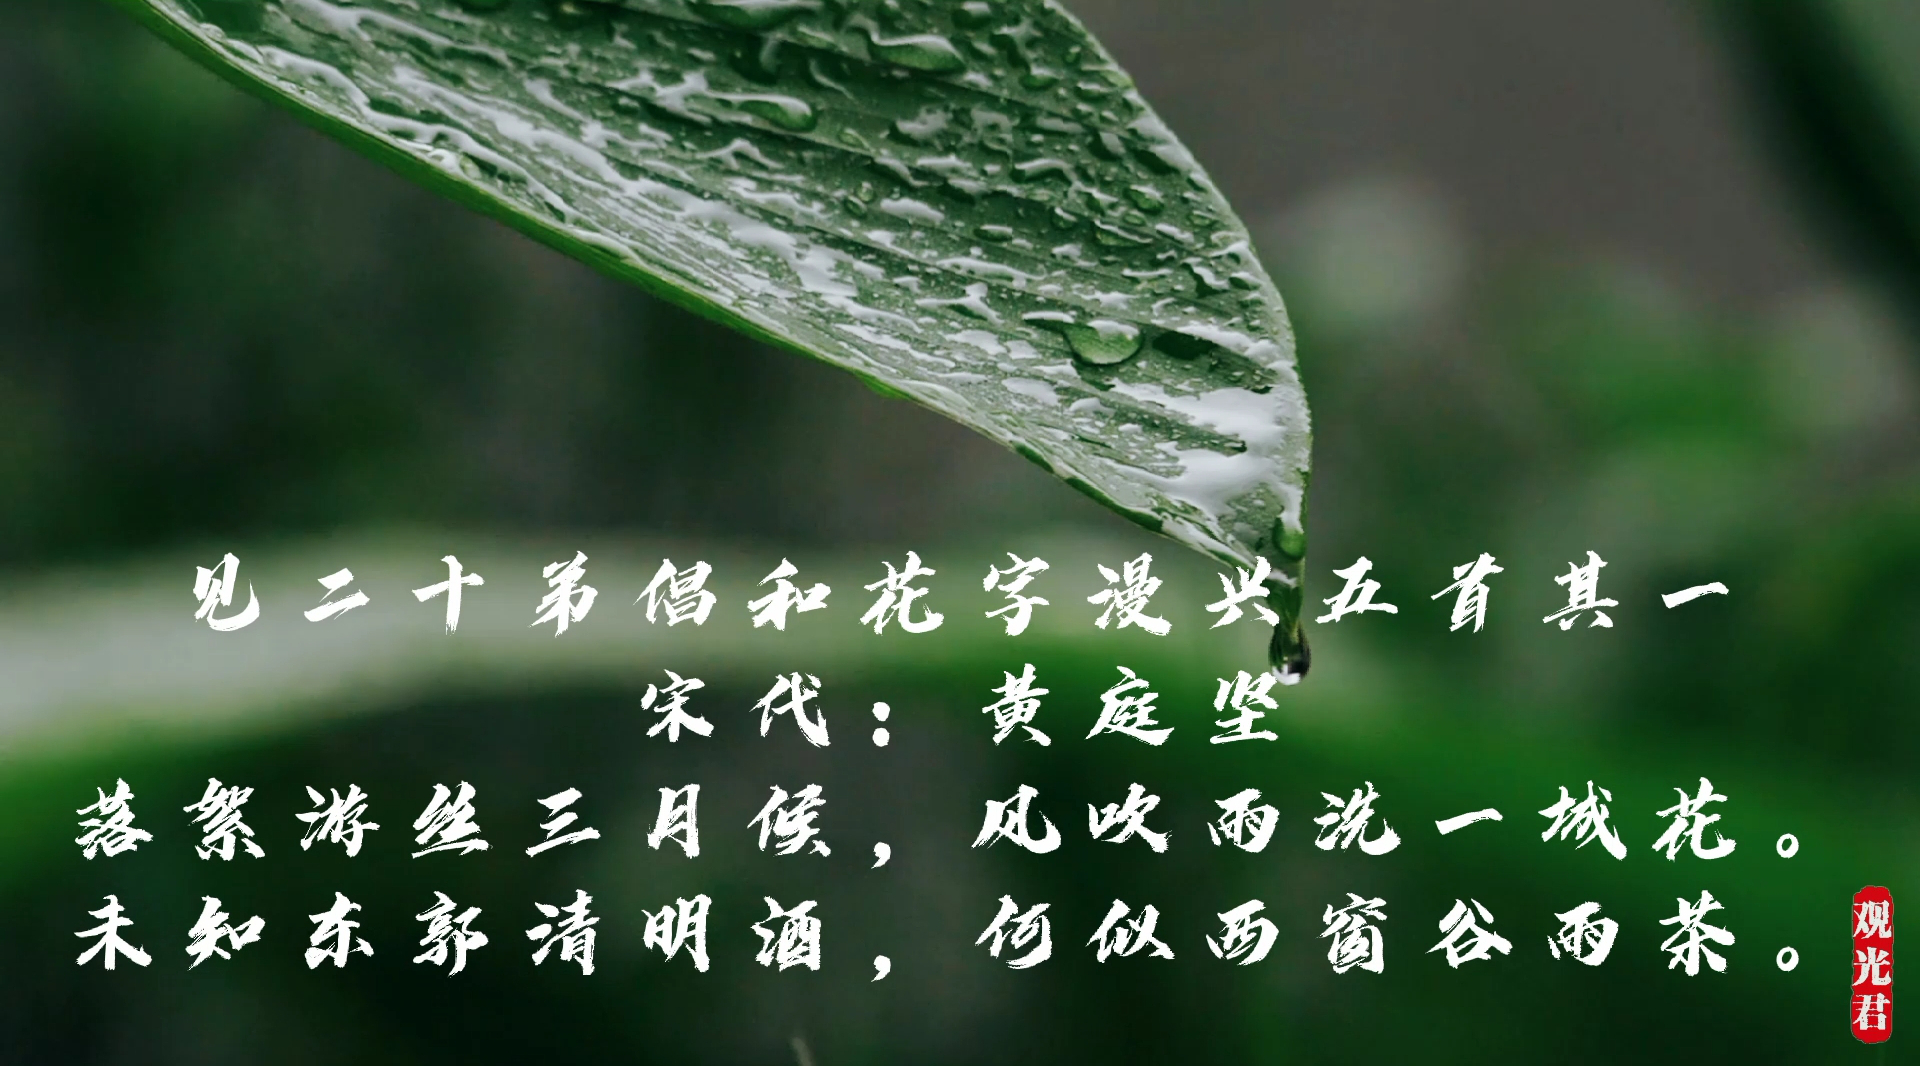 二十四节气之谷雨:品读宋代黄庭坚诗词,了解谷雨